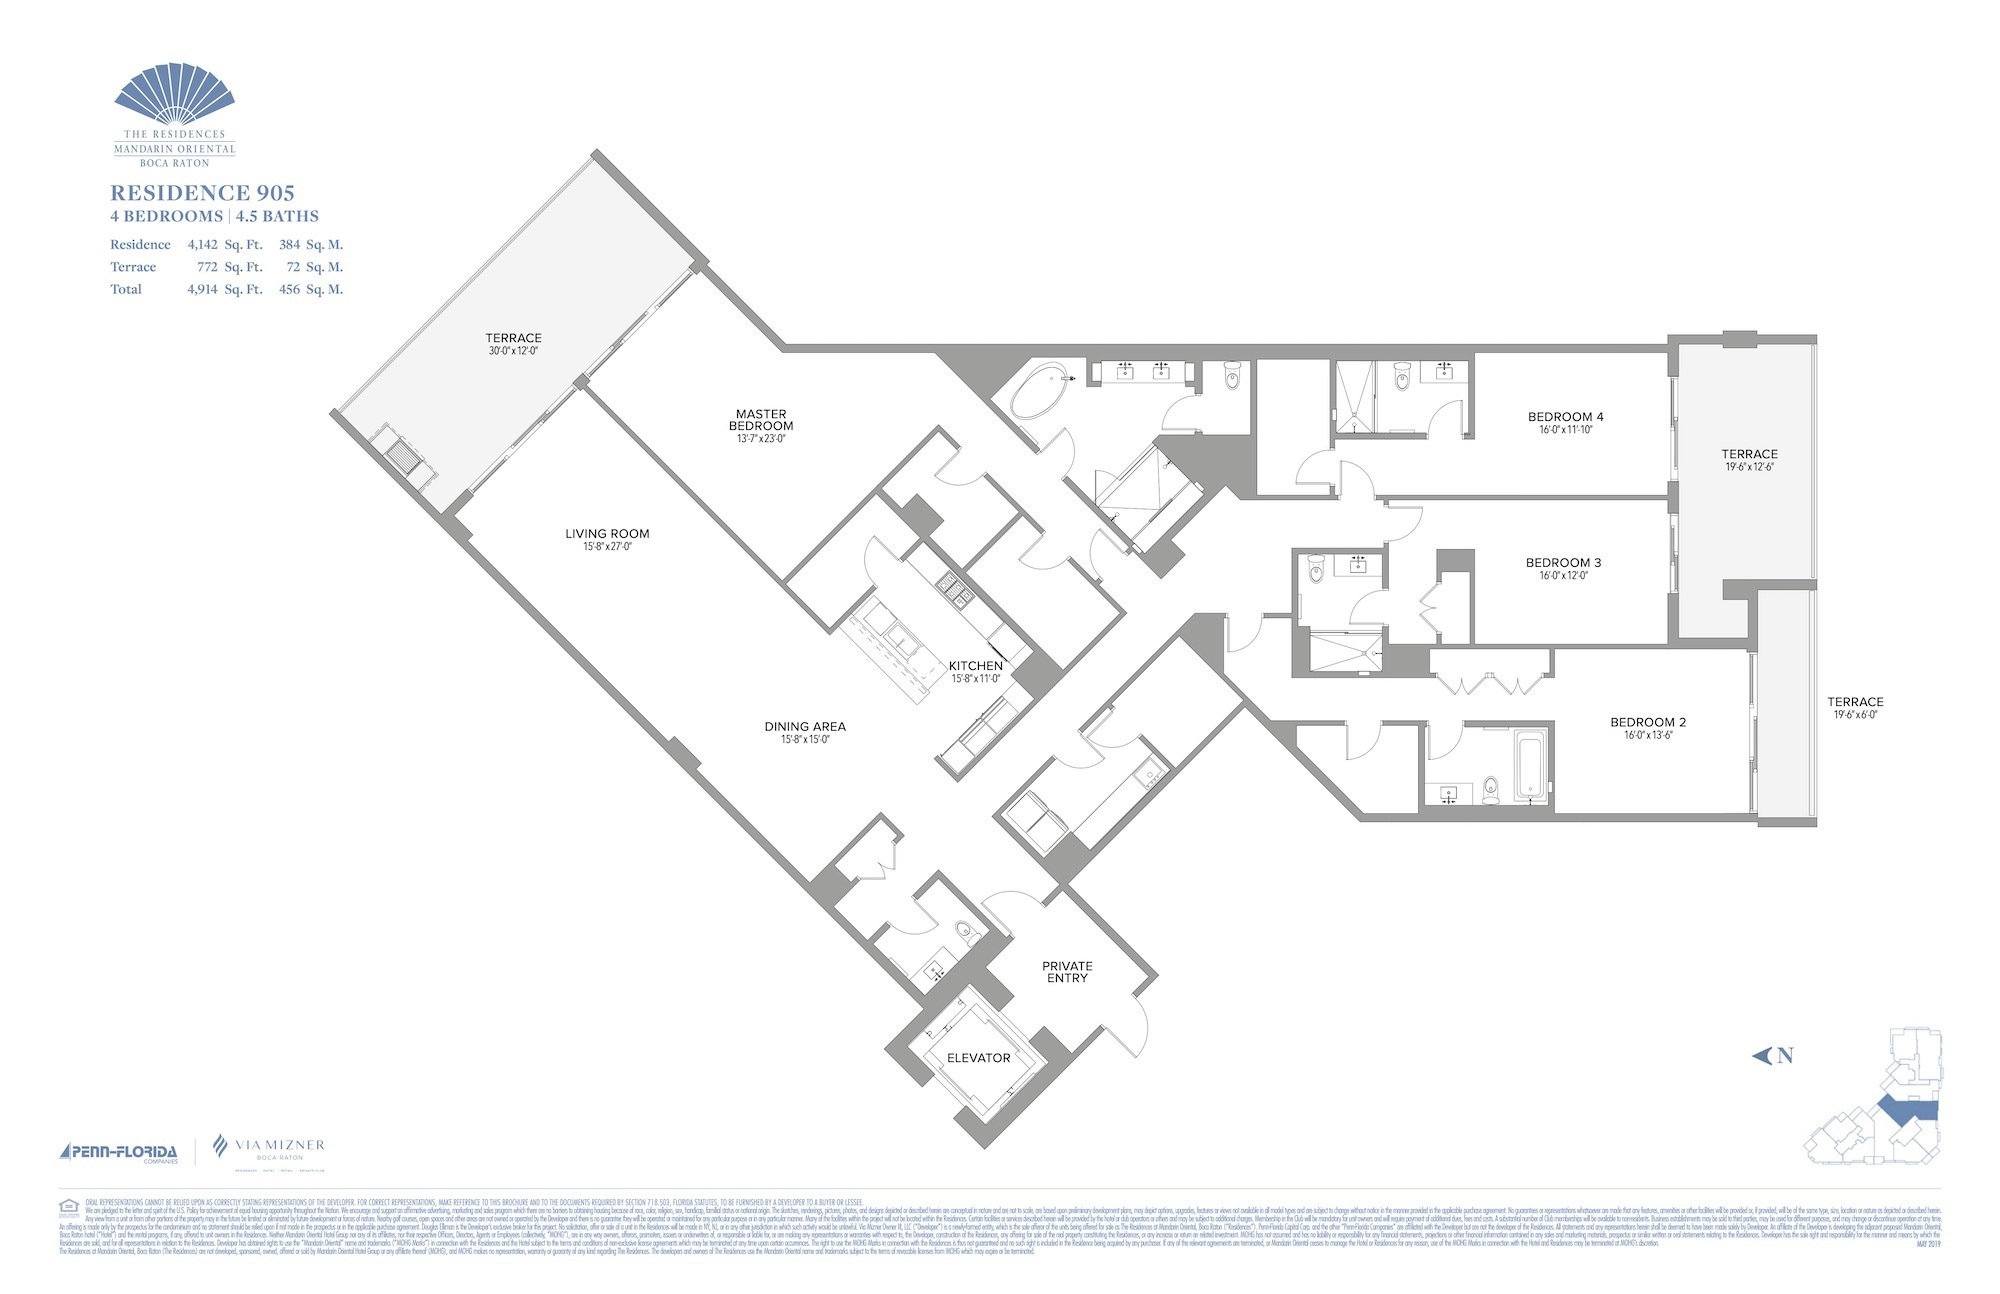 Floor Plan for Residence at Mandarin Oriental Floorplans, Residence 905